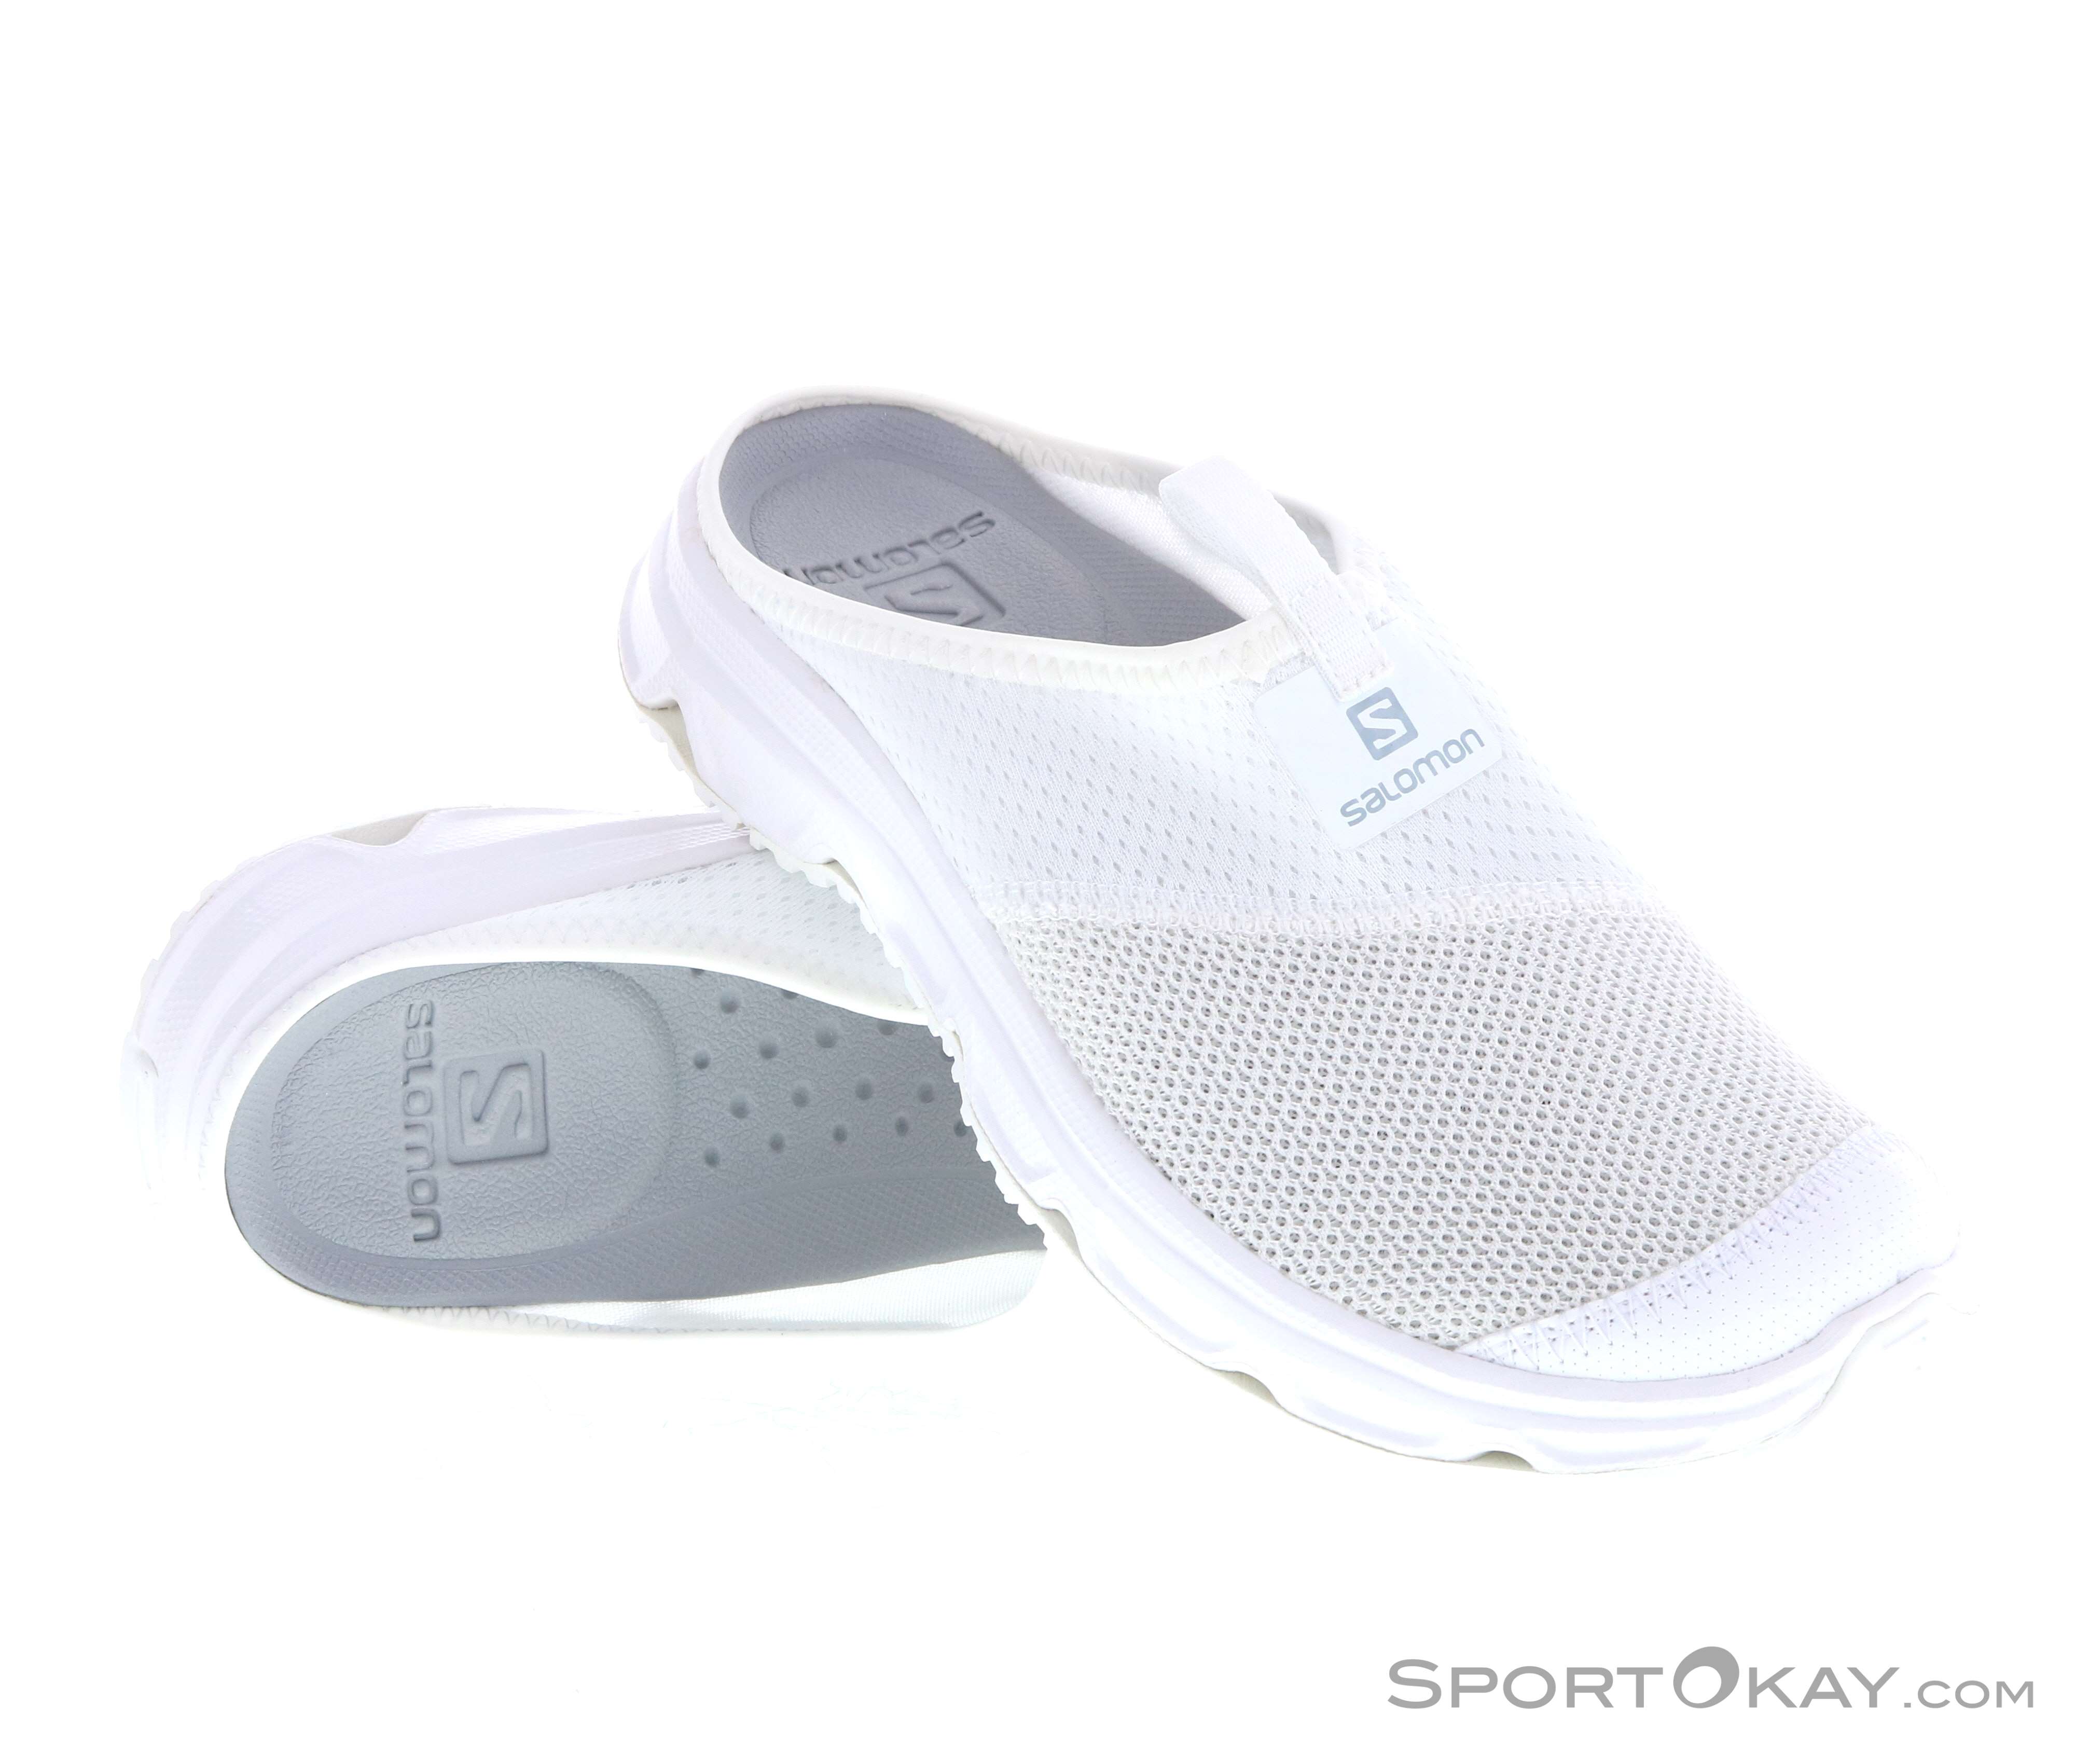 Salomon RX Slide 4.0 Womens Leisure Sandals - Leisure Shoes Shoes & Poles - Outdoor - All